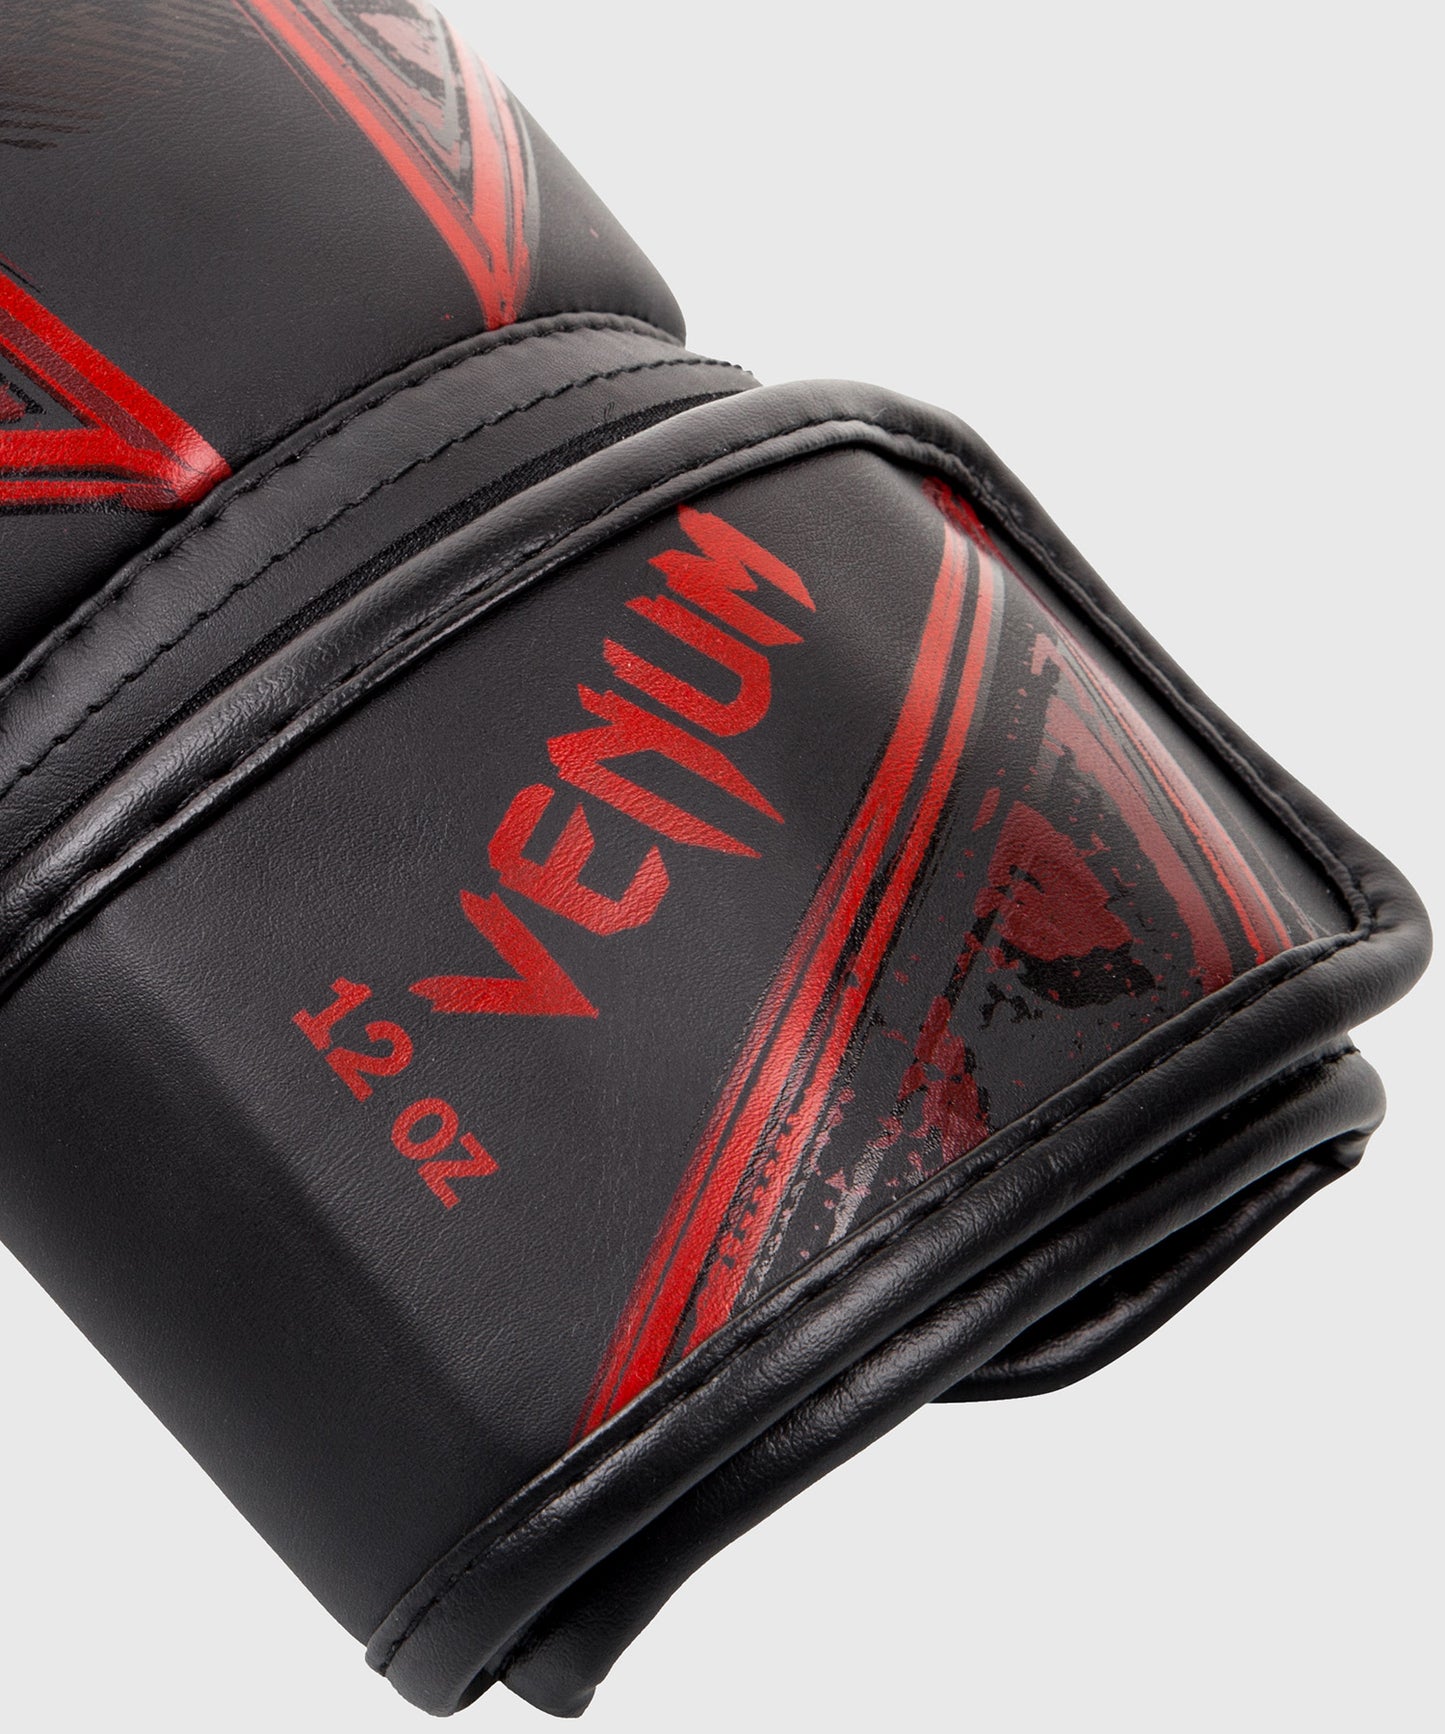 Venum Gladiator 3.0 Boxhandschuhe - Schwarz/Rot